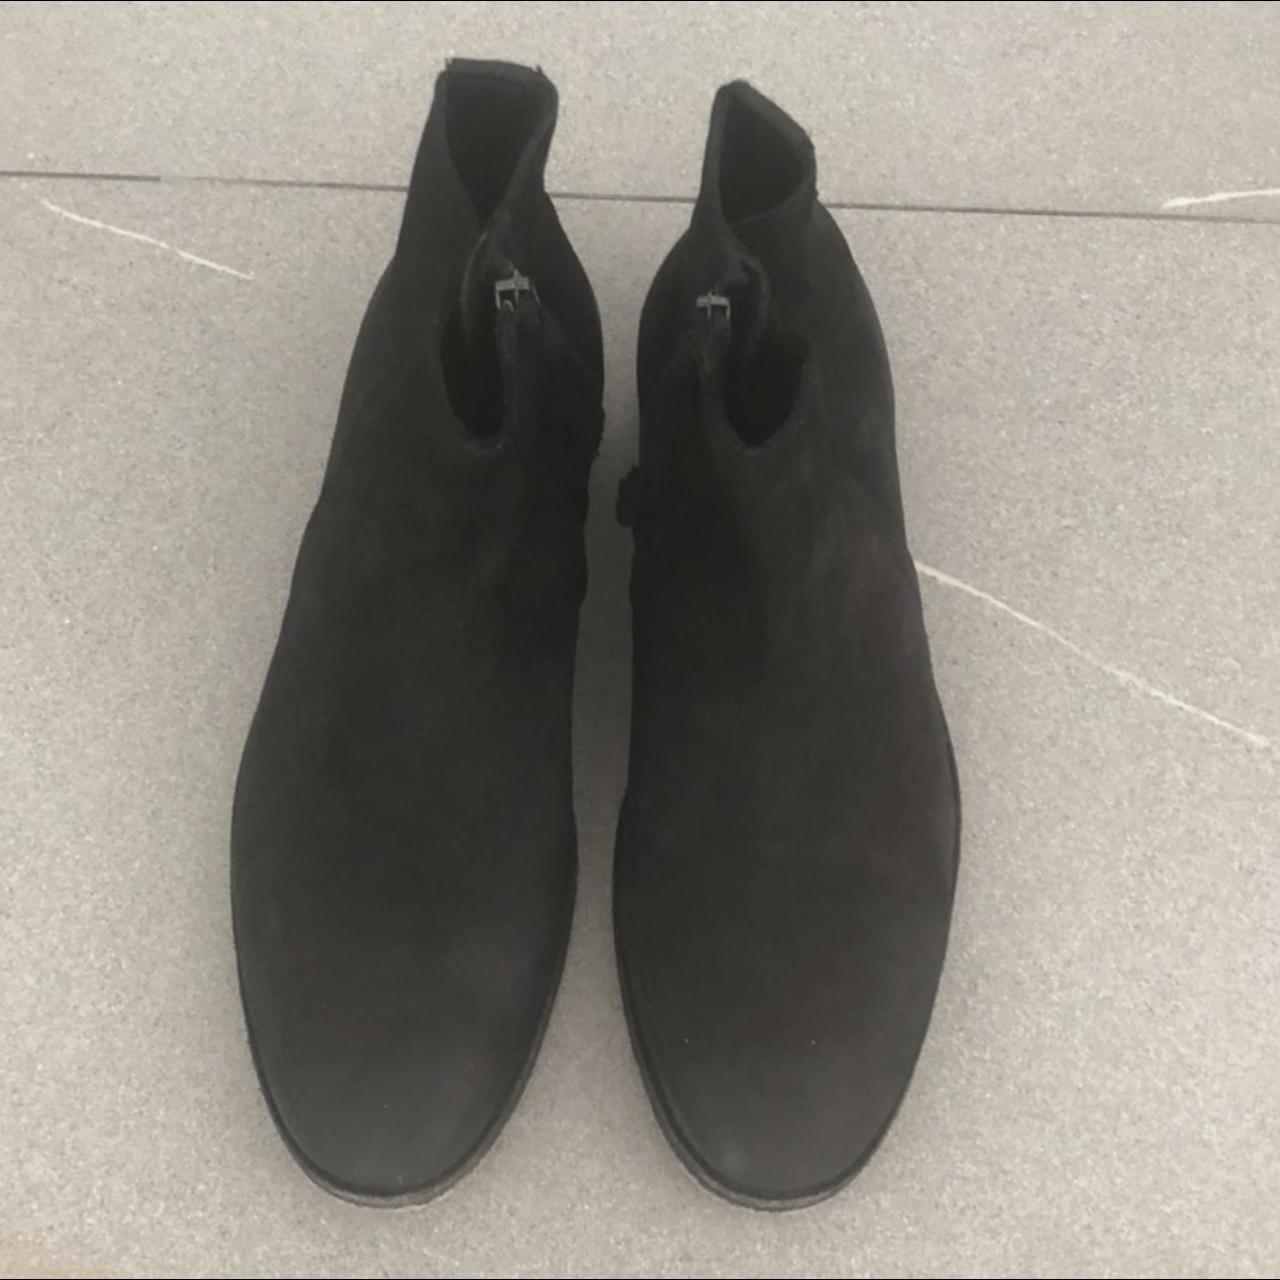 Allsaints Lance Chelsea Boot Size - 7 Black - Depop